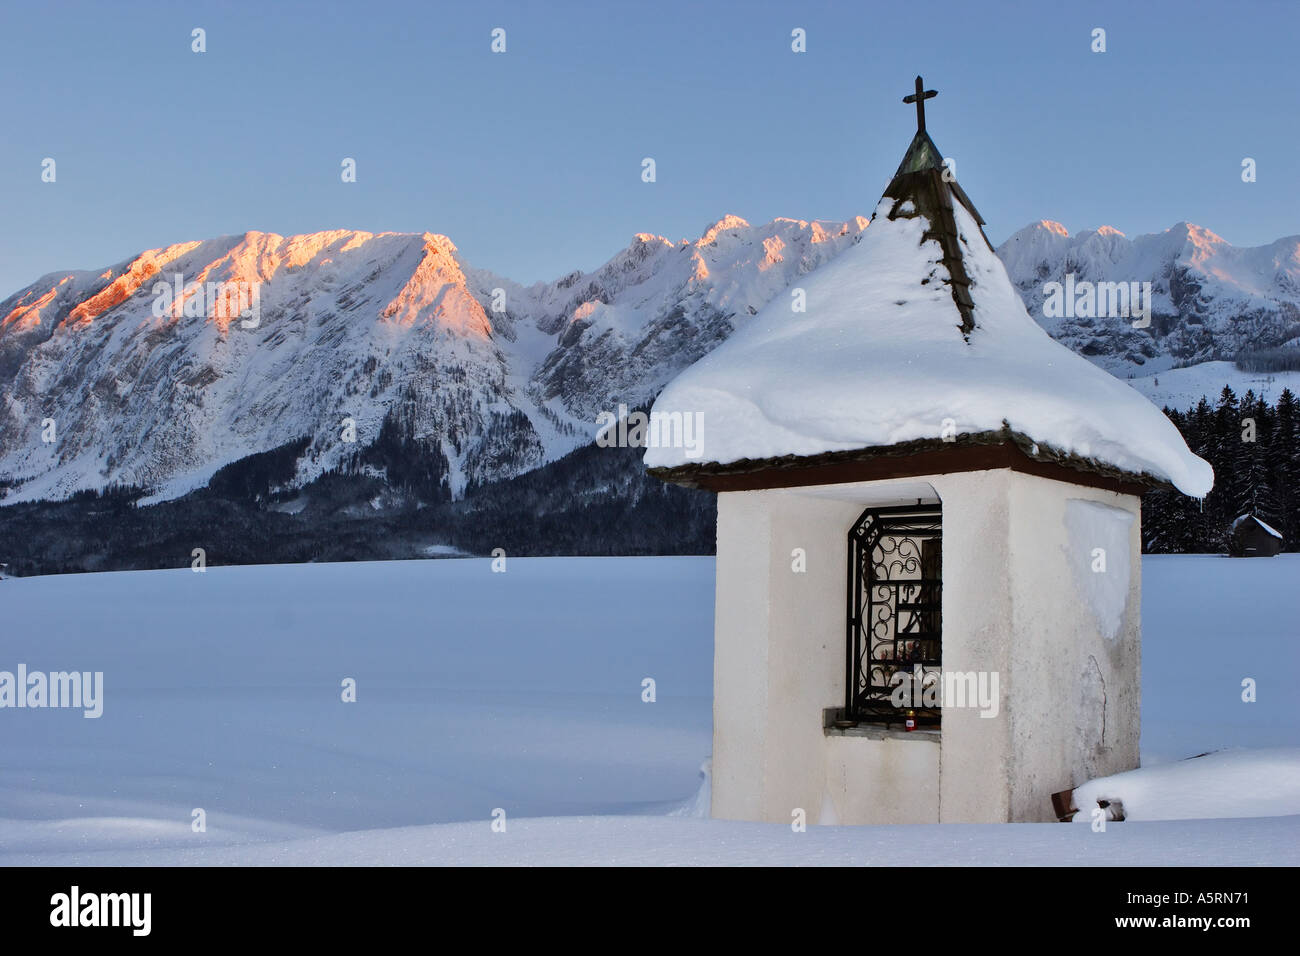 La pequeña capilla y la gama grimming al atardecer krungl estiria austria Foto de stock